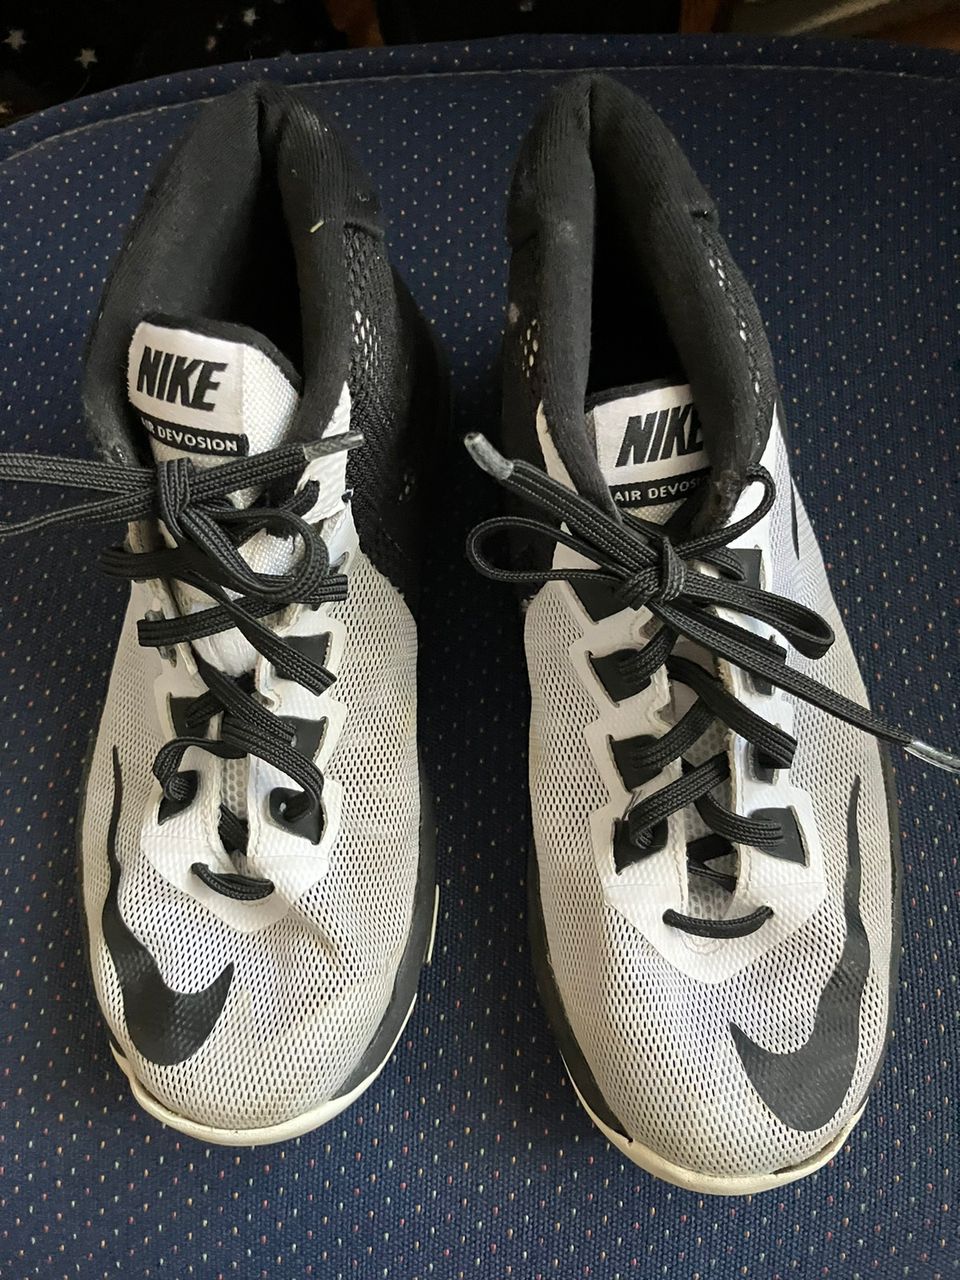 Nike mustavalkoiset lenkkarit koko 35,5